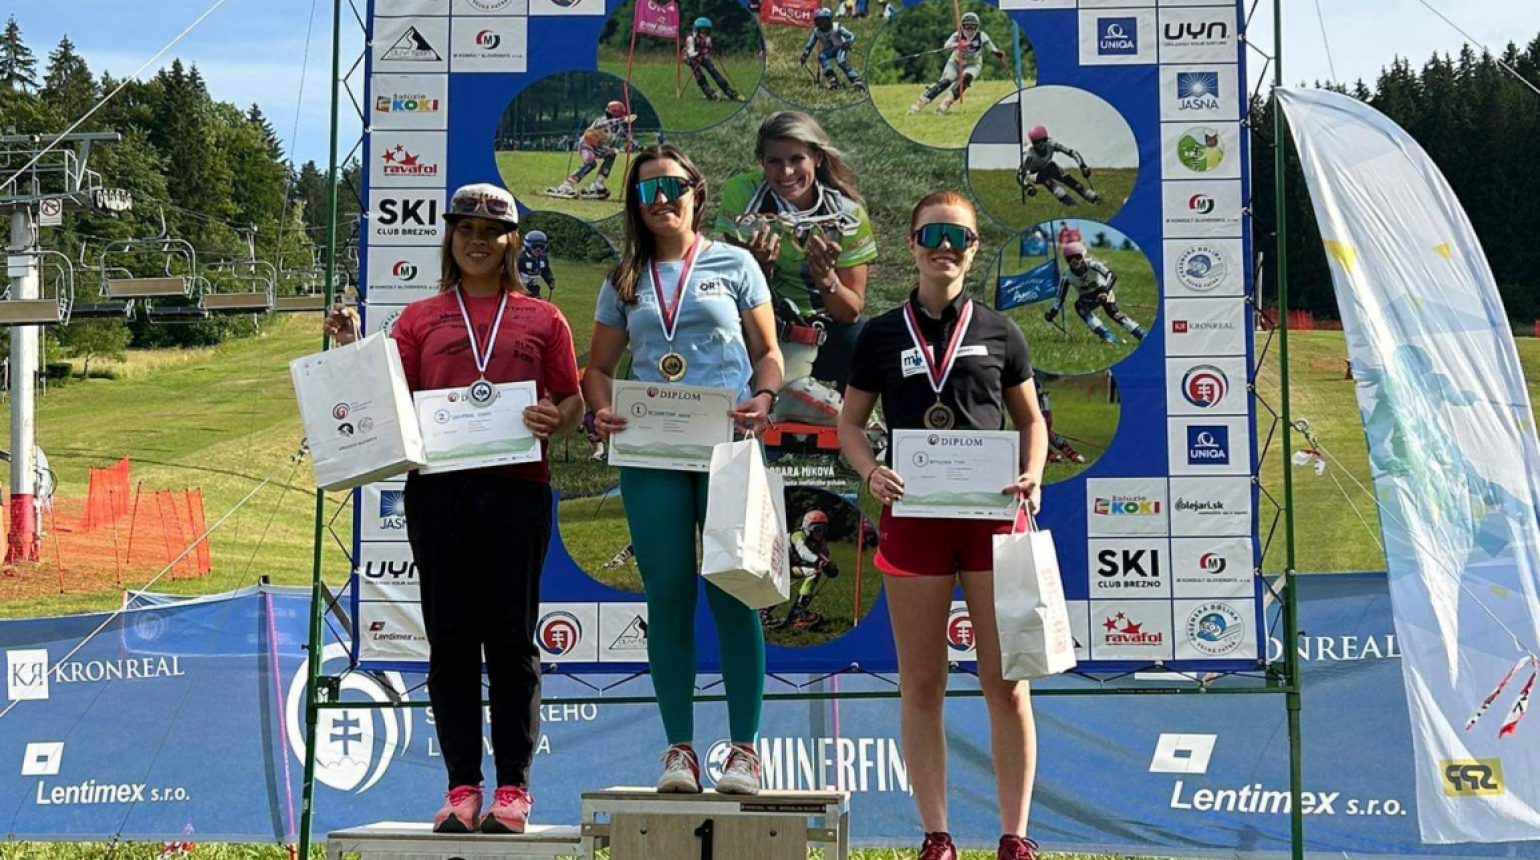 Mladí travní lyžaři absolvovali kemp a závody na Slovensku, v seniorech uspěla Eliška Rejchrtová